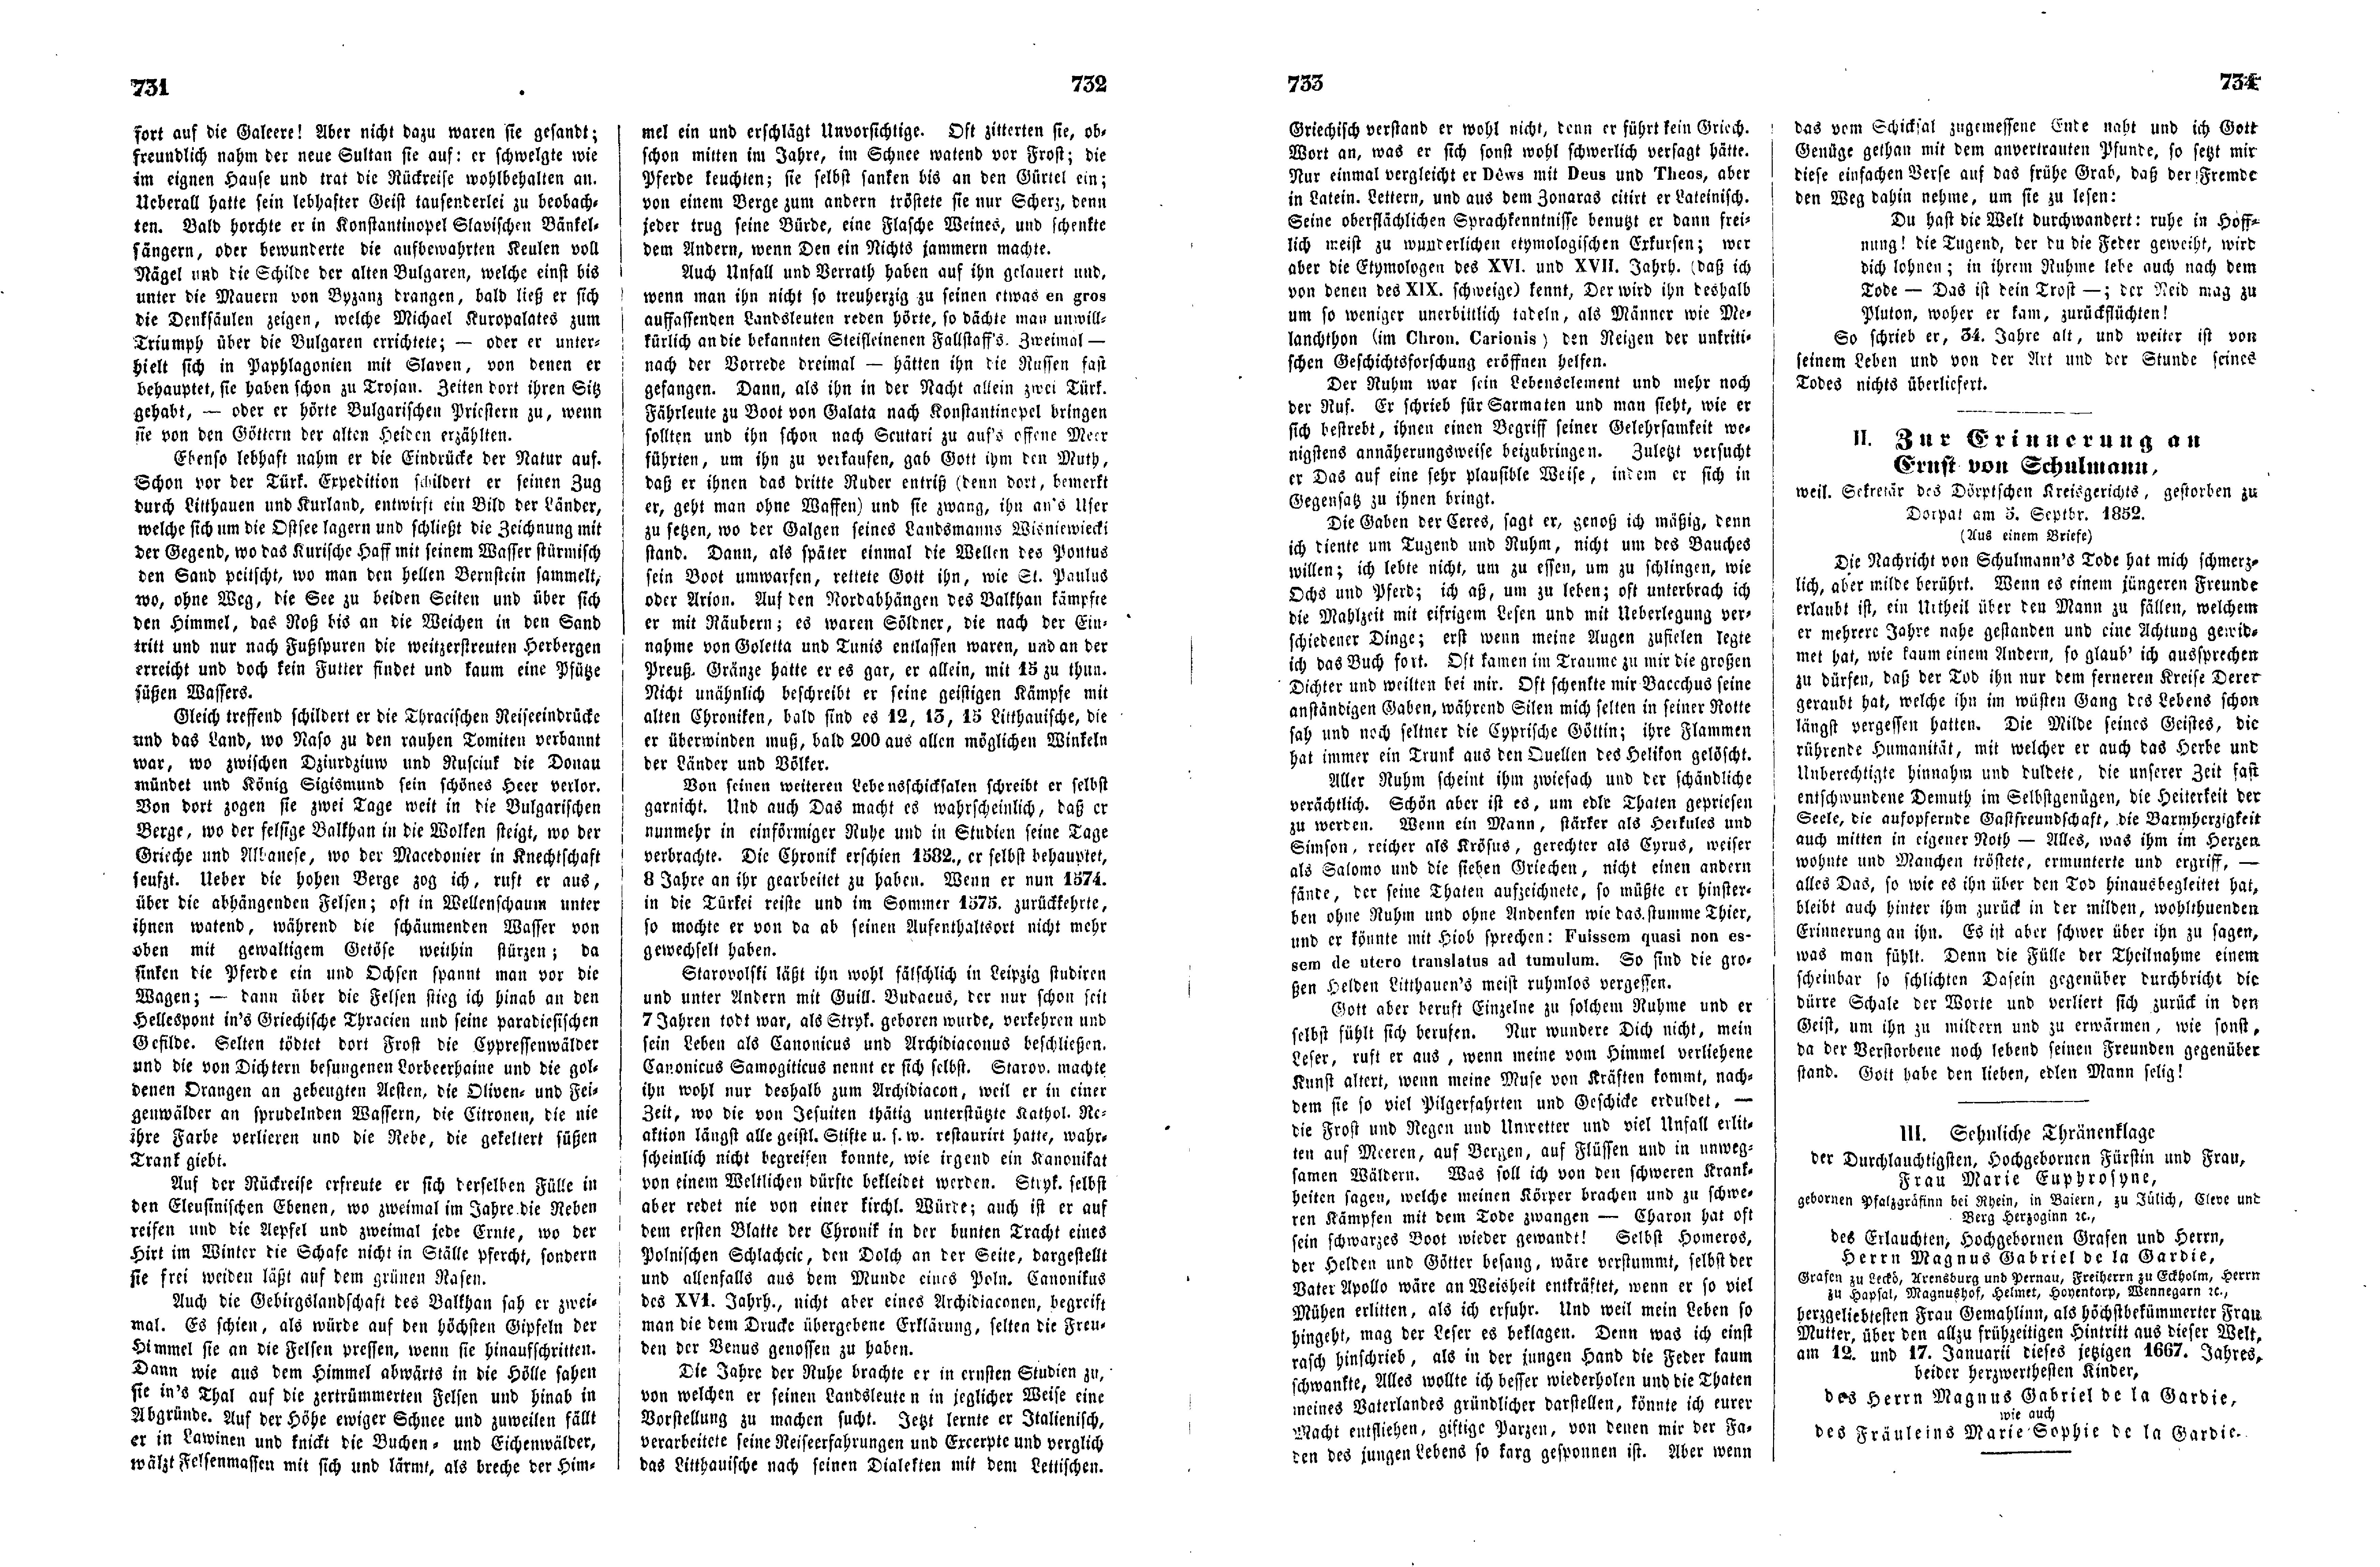 Das Inland [17] (1852) | 188. (731-734) Haupttext